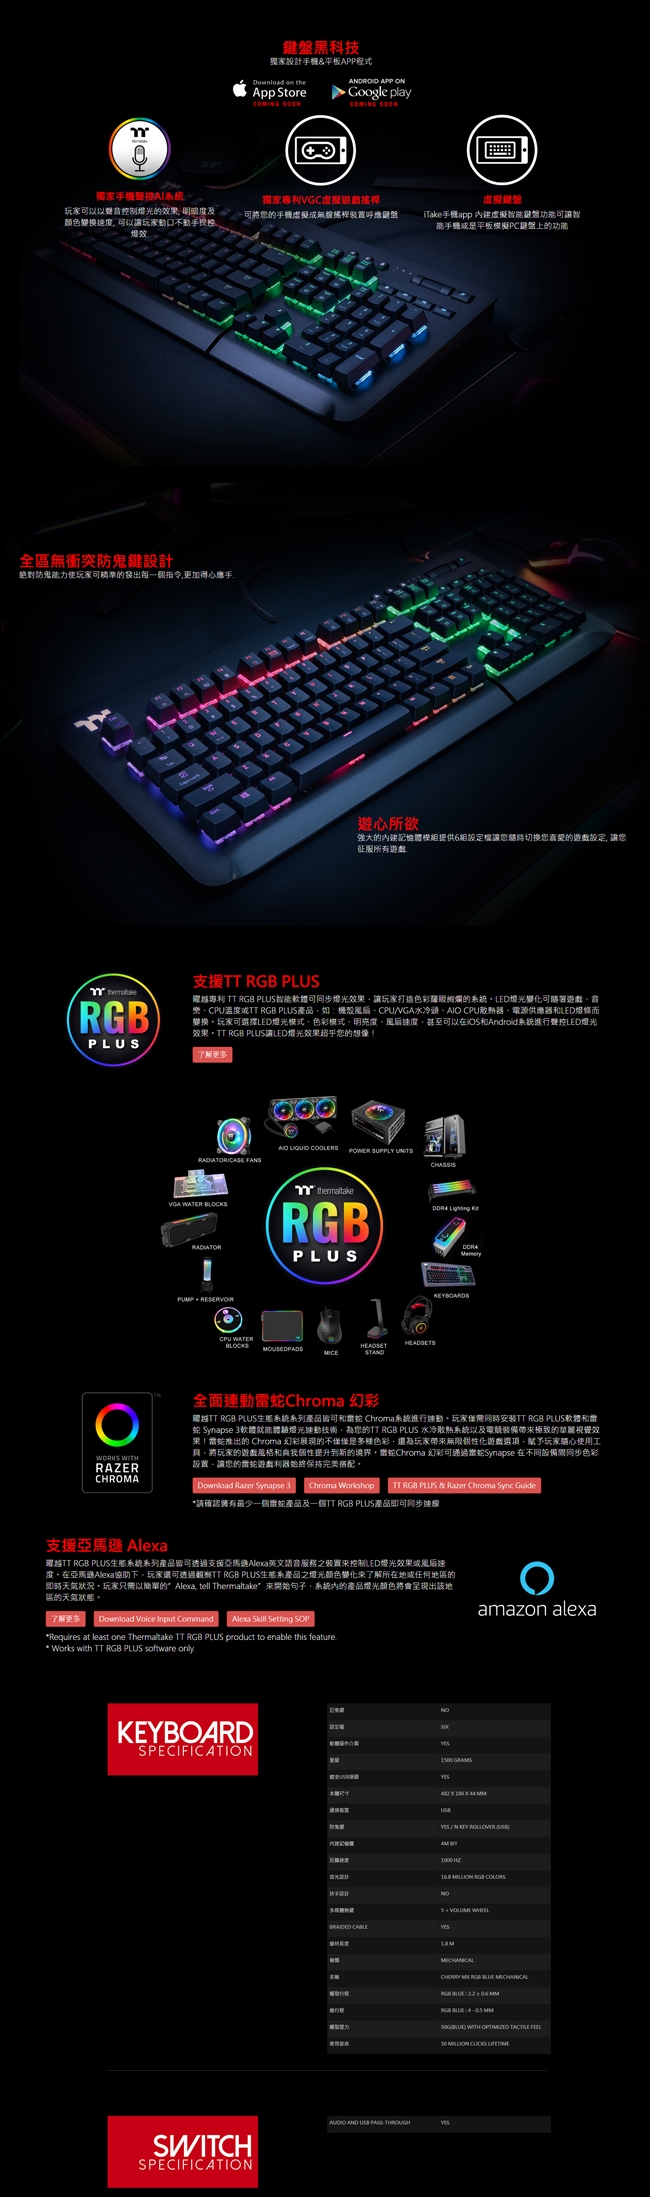 曜越 Level 20 RGB Cherry MX 機械式青軸電競鍵盤